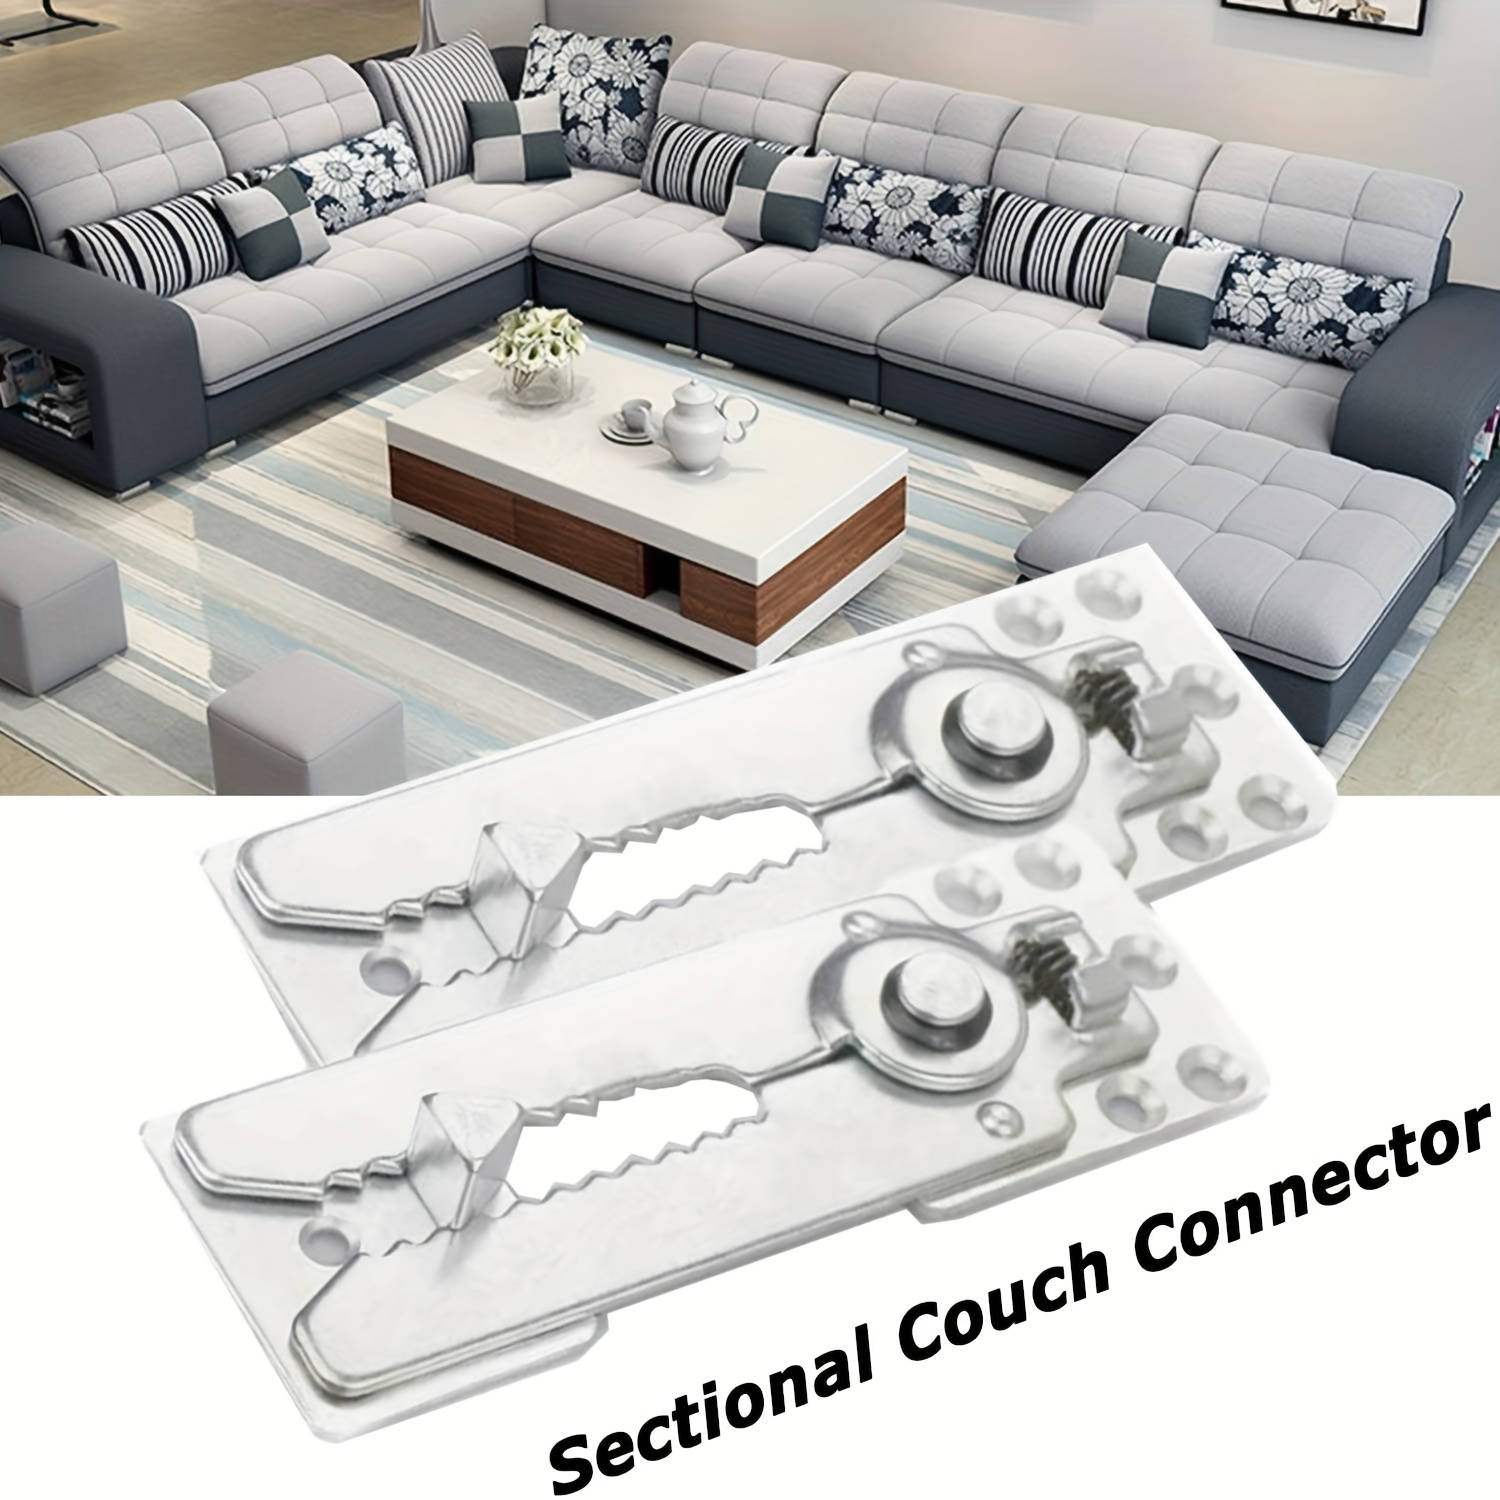  Home Square Juego de muebles de sala de estar, 3 piezas  modernas de piel sintética para sofá, sillones con brazos, silla de club,  marco de madera maciza, rojo y negro 